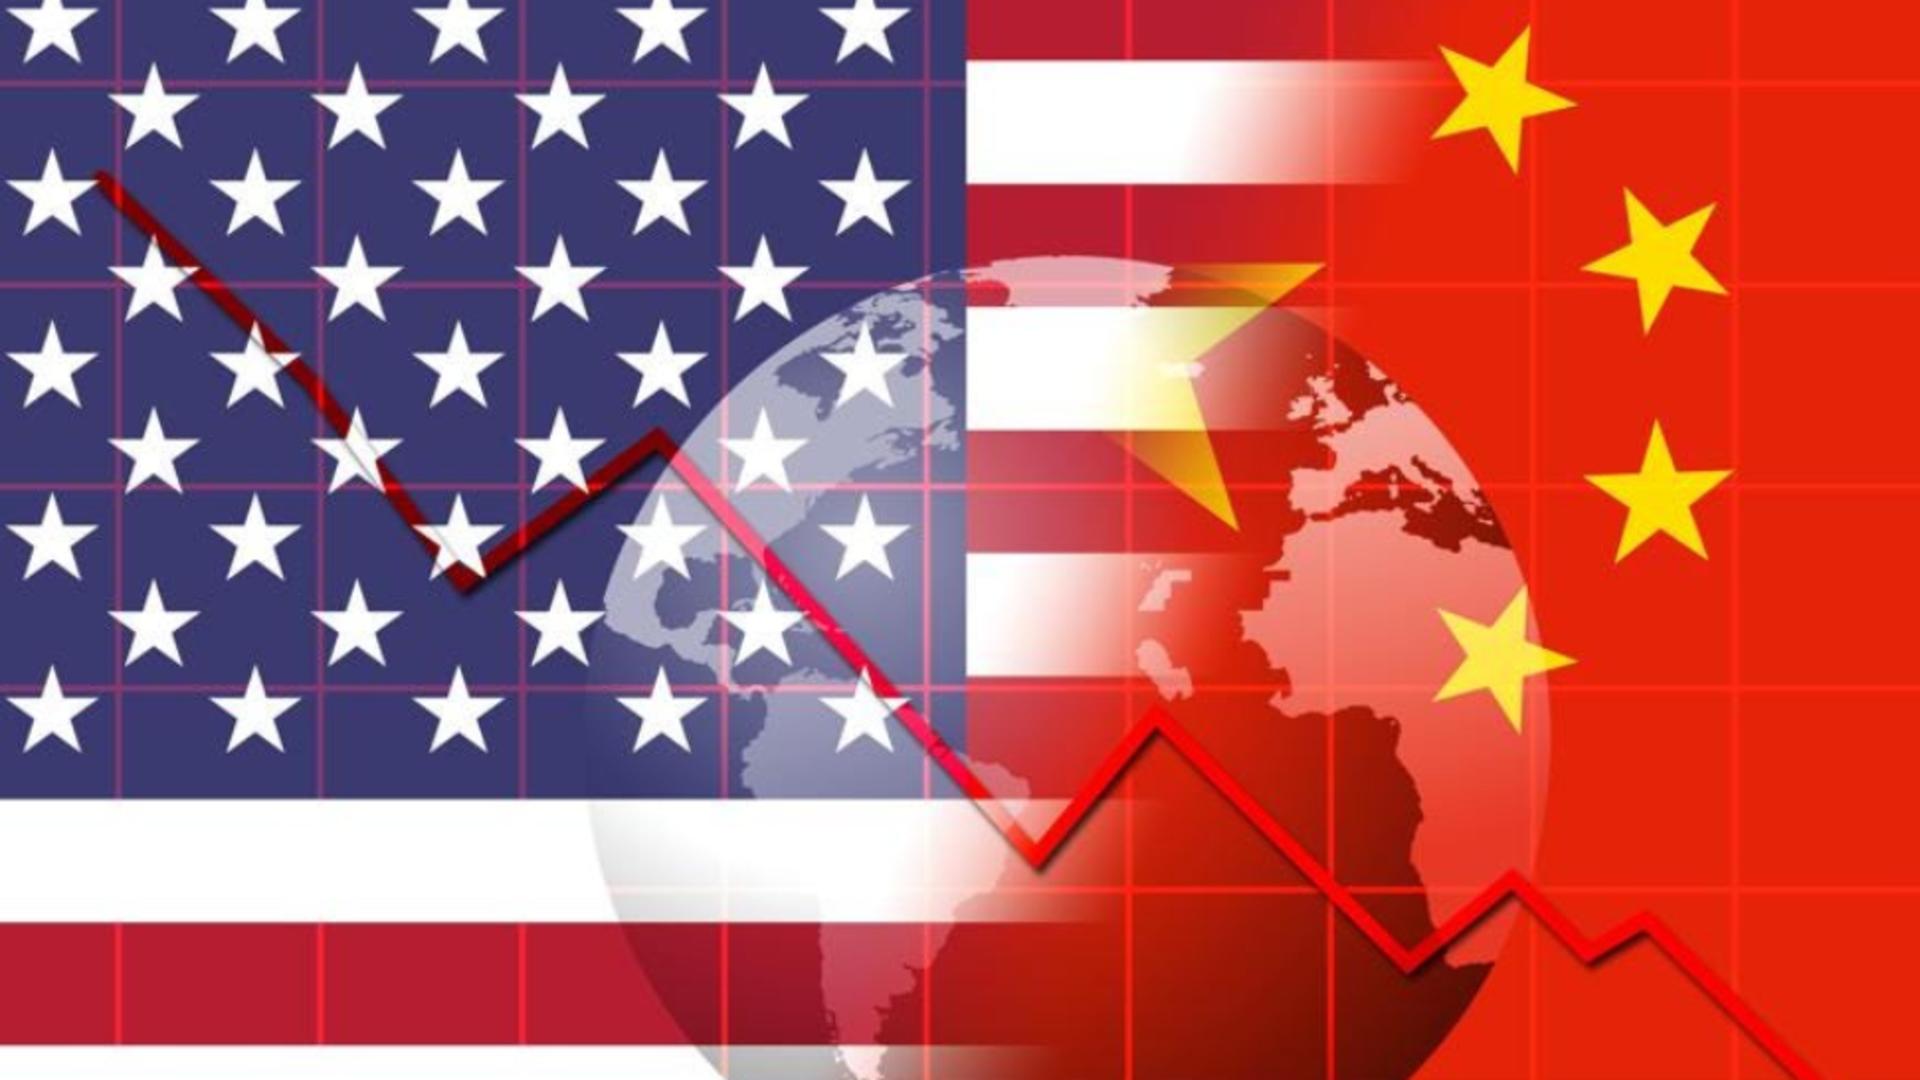 FMI intervine în conflictul dintre SUA și China - Avertisment sumbru despre economia mondială - Mesaj de forță către Biden și Xi JinPing